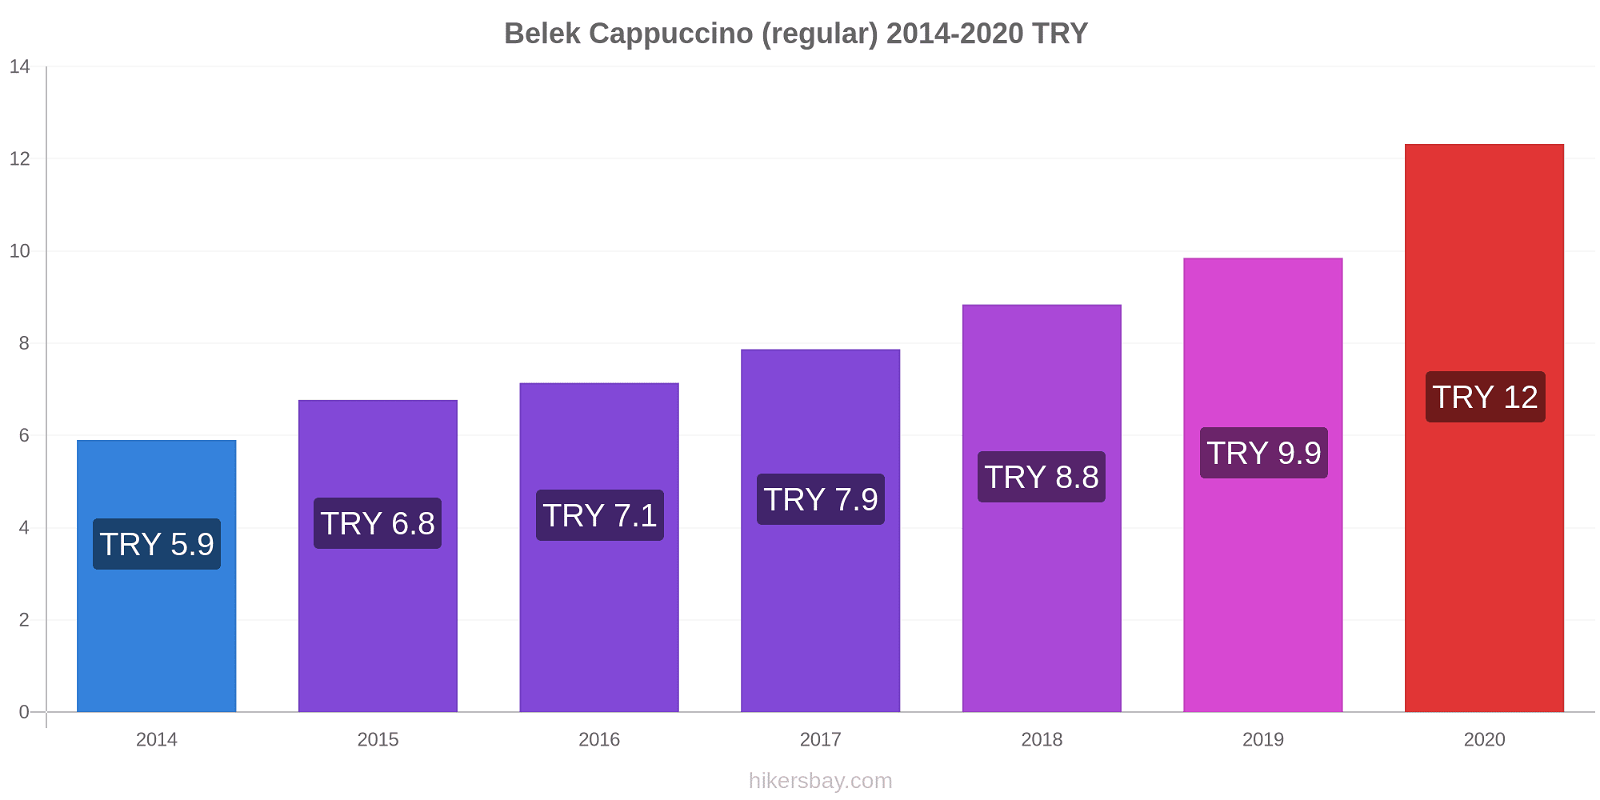 Belek price changes Cappuccino (regular) hikersbay.com